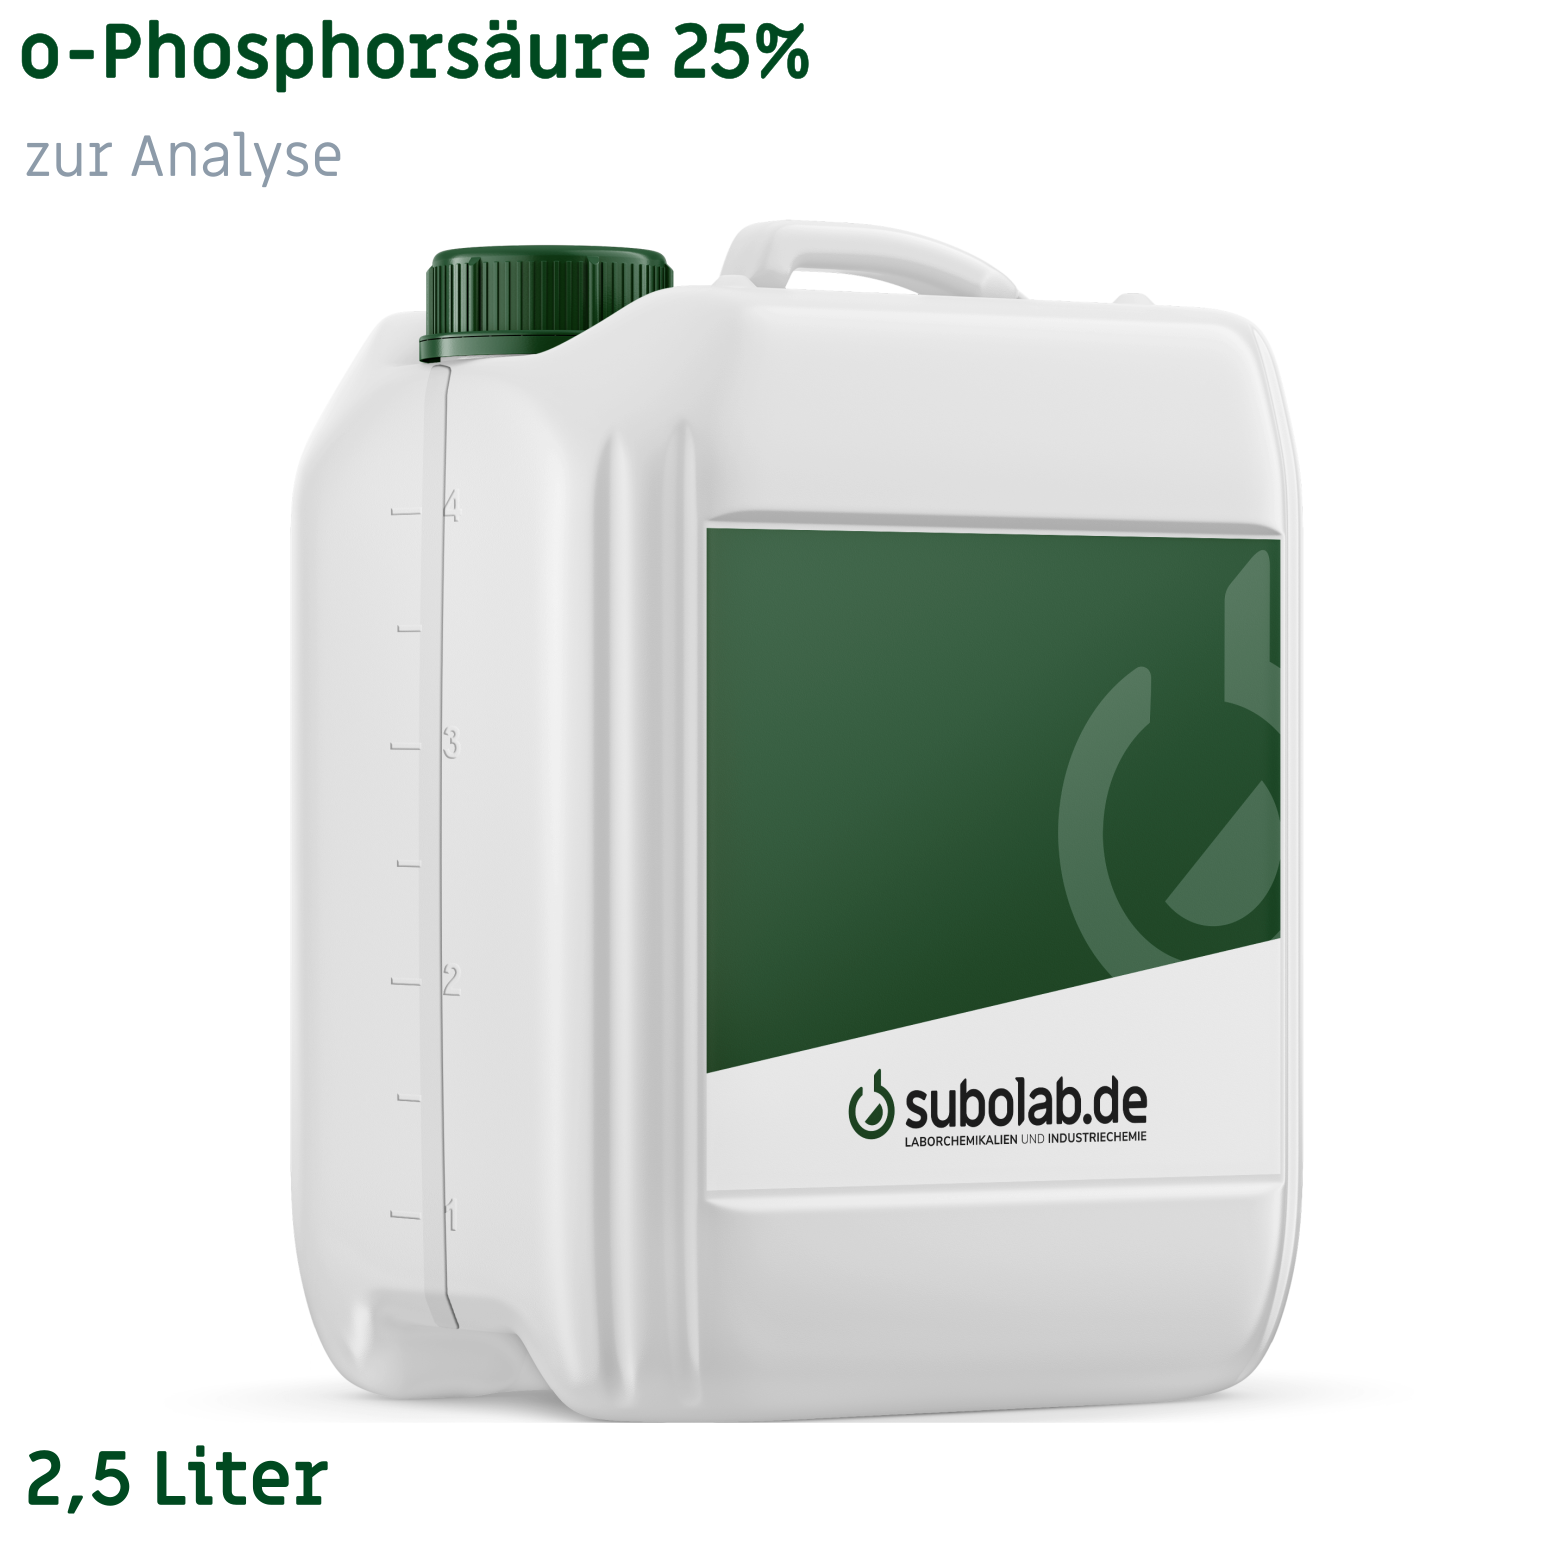 Bild von o-Phosphorsäure 25% zur Analyse (2,5 Liter)